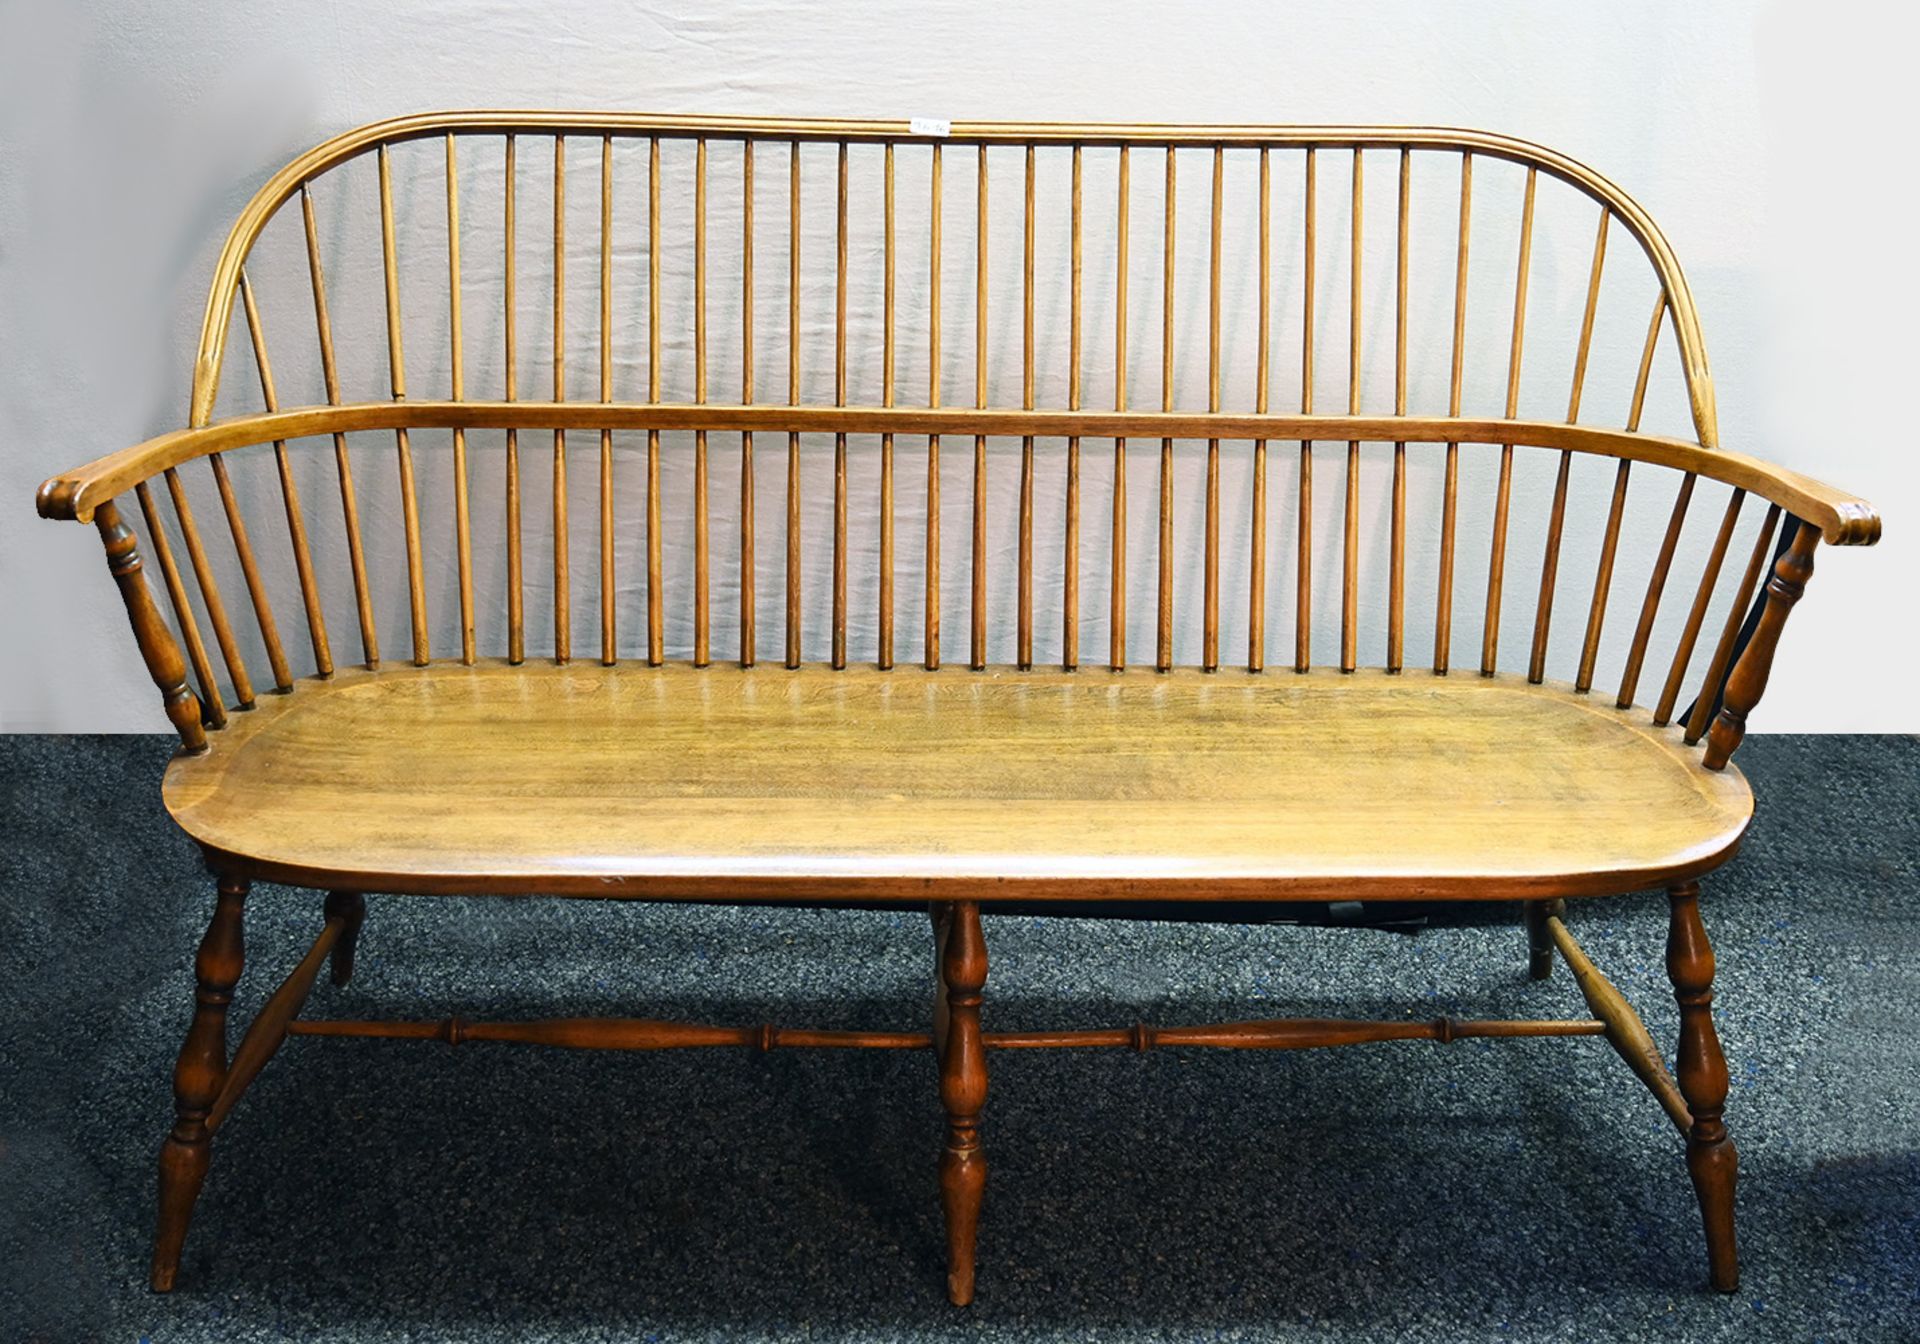 5 Stühle/1 Sitzbank im Windsor-Stil, davon 2 Armlehnstühle H. PANDER & ZONEN, Dänemark Modellnr. P 5 - Bild 3 aus 3